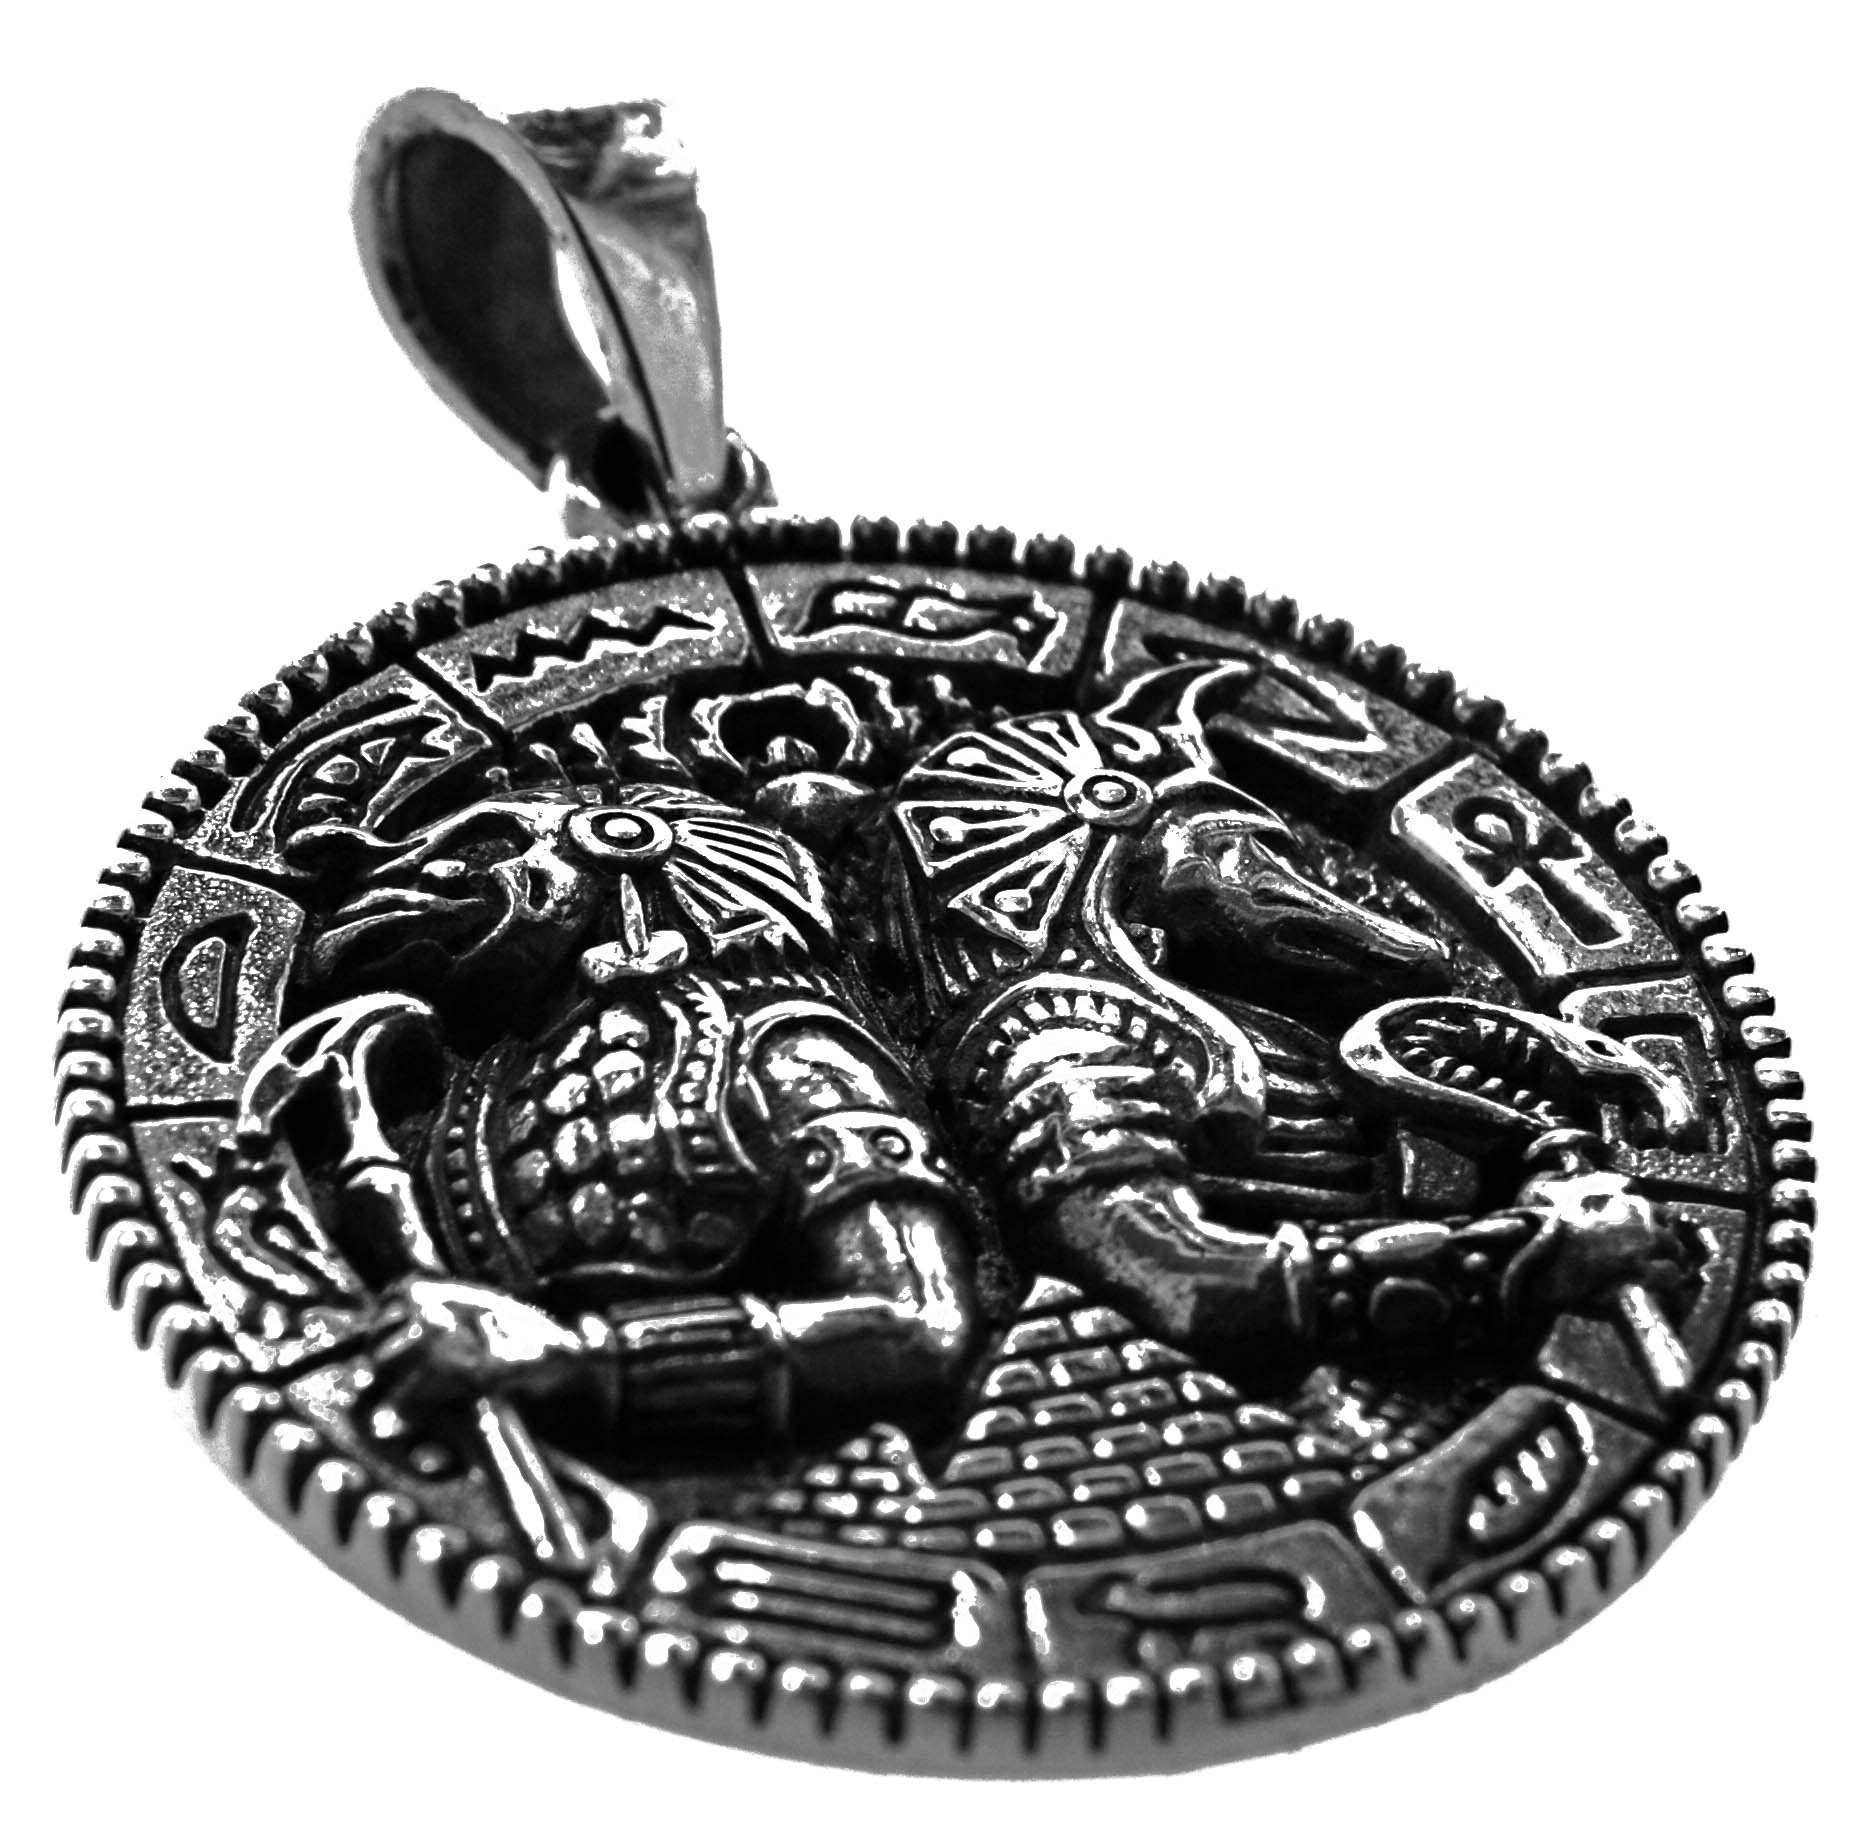 Silber Ägypten 925 Schakal Kettenanhänger Kiss Ägyptisch Anubis Nr.410 of Sterling Leather Horus + Anhänger